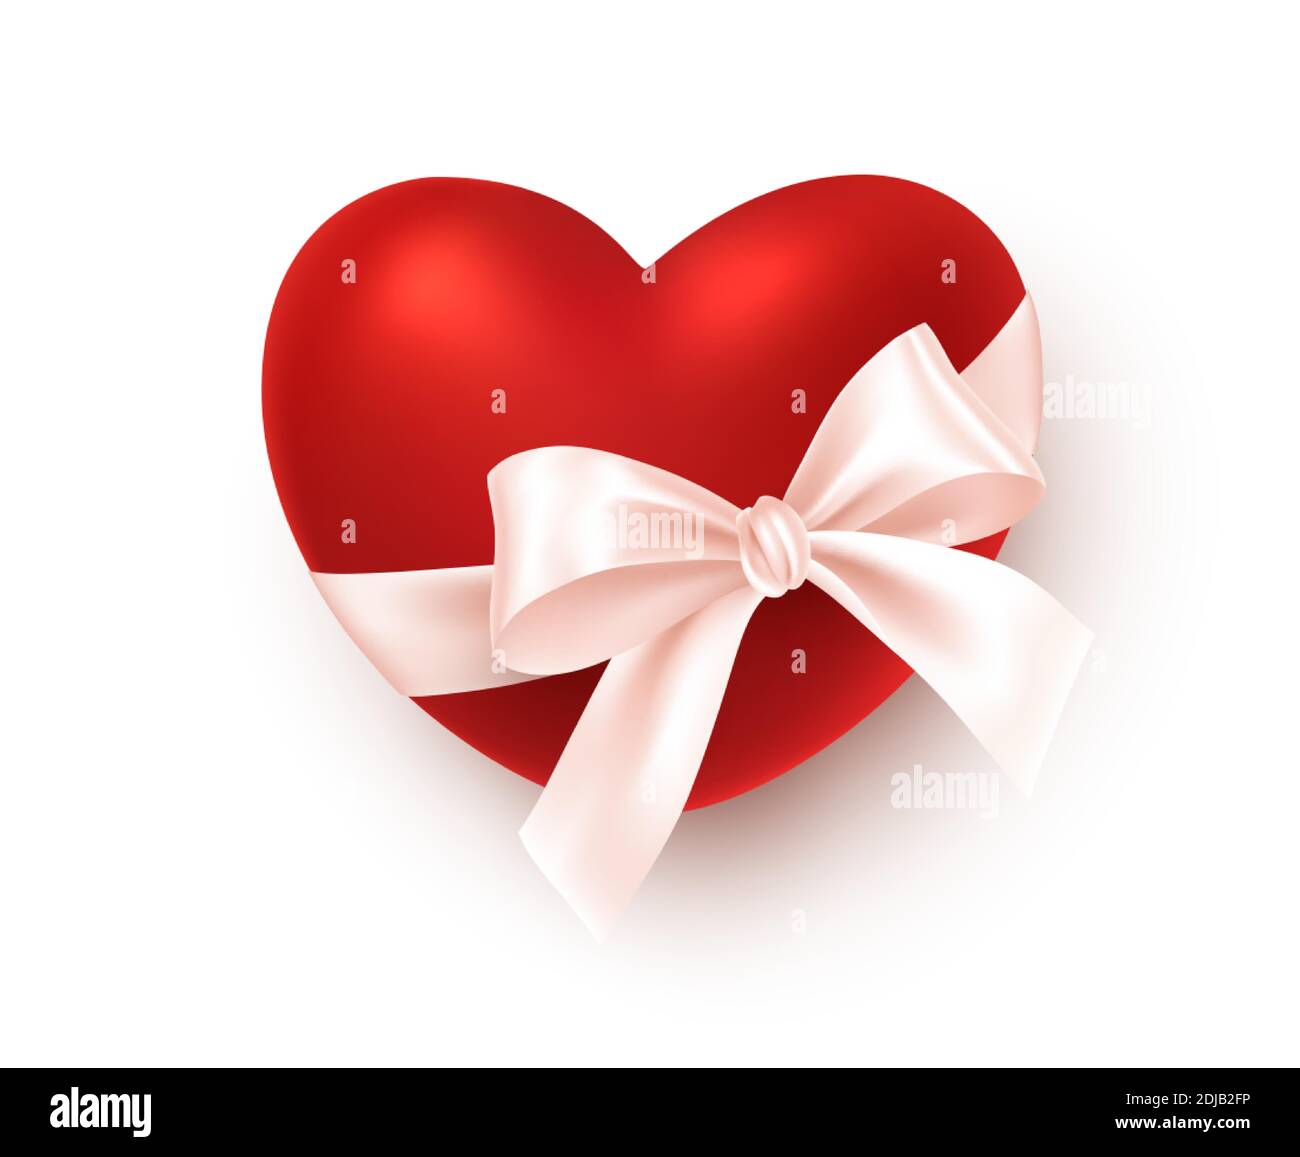 Coeur rouge réaliste avec noeud en ruban de soie blanc isolé sur fond blanc. Élément festif pour des voeux heureux de la Saint-Valentin. Vecteur Illustration de Vecteur